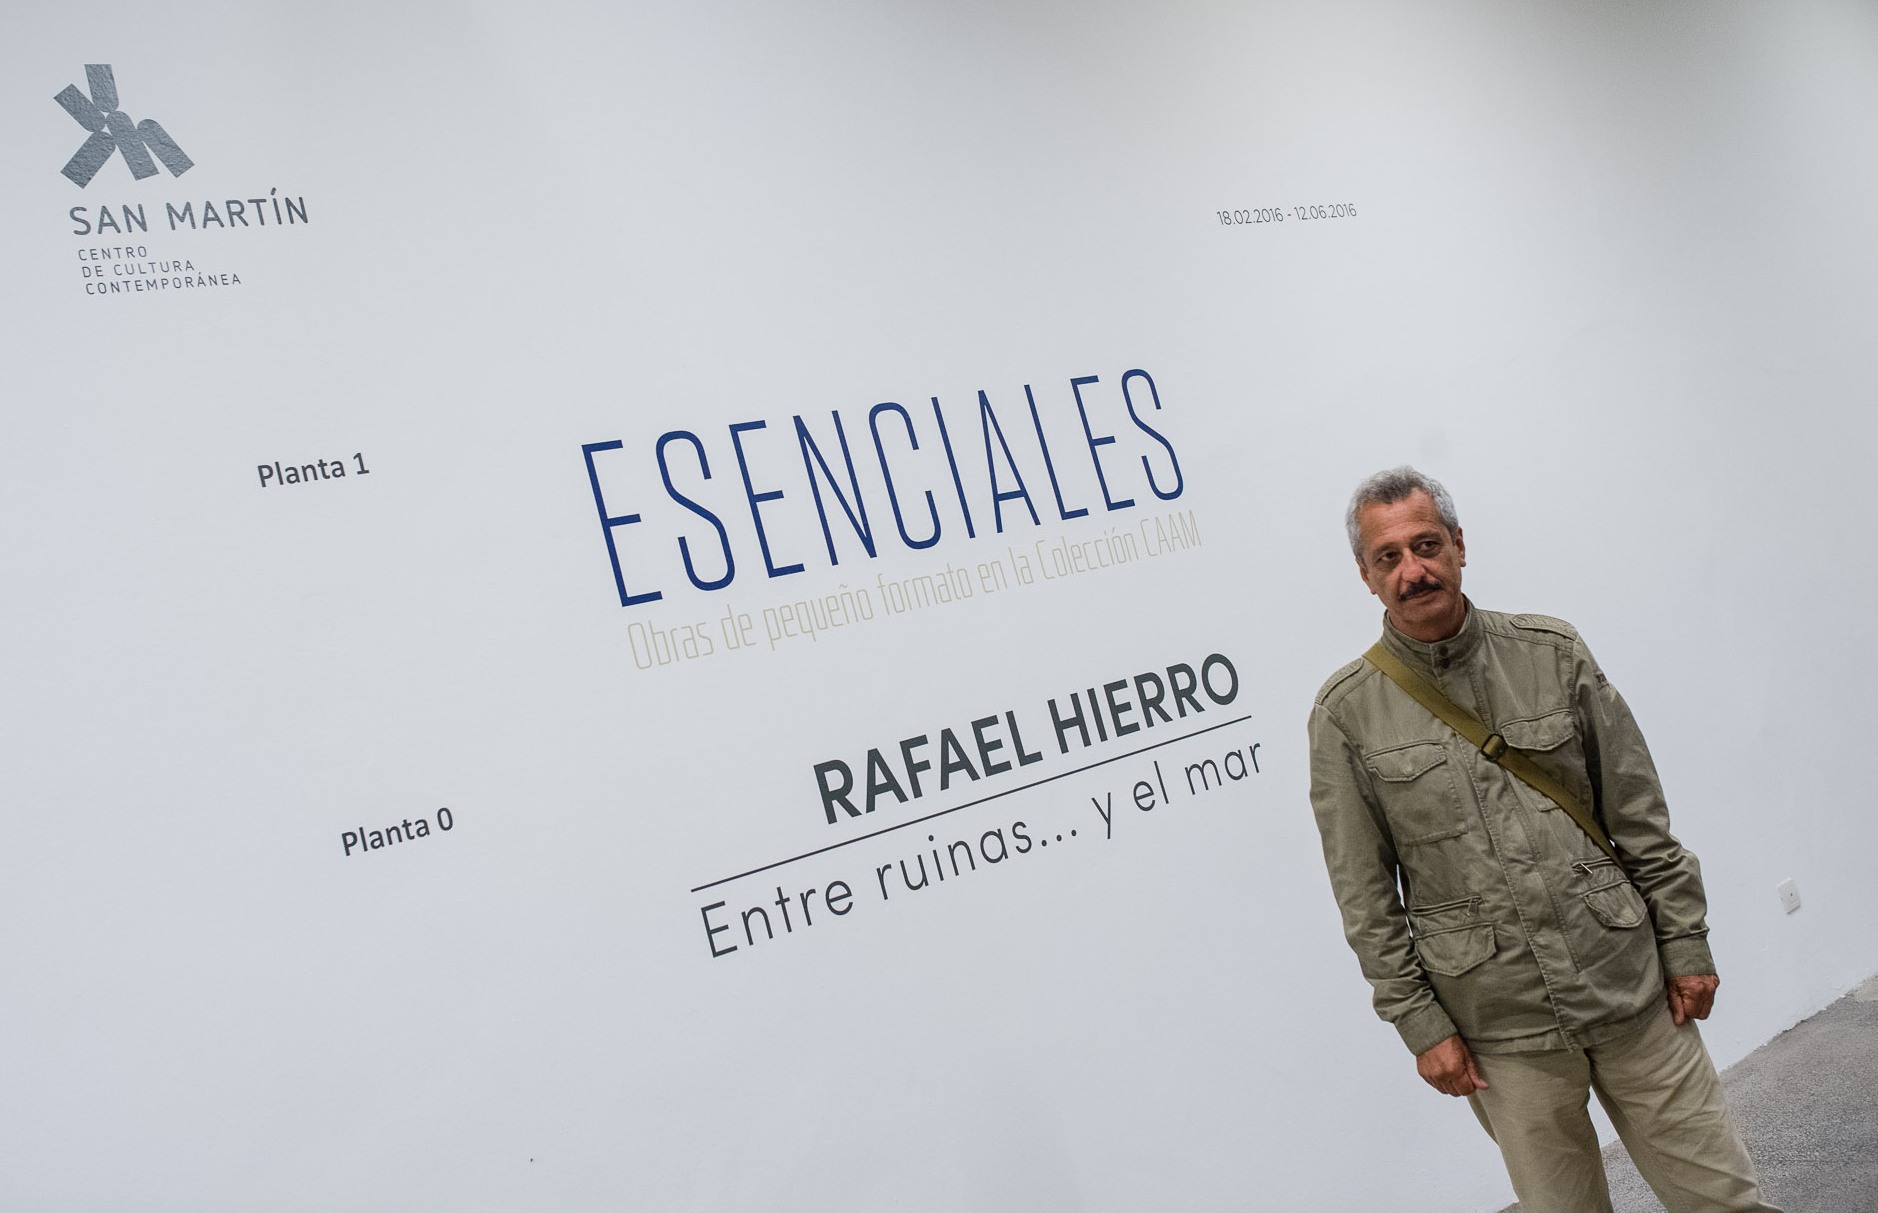 El artista Rafael Hierro en San Martín